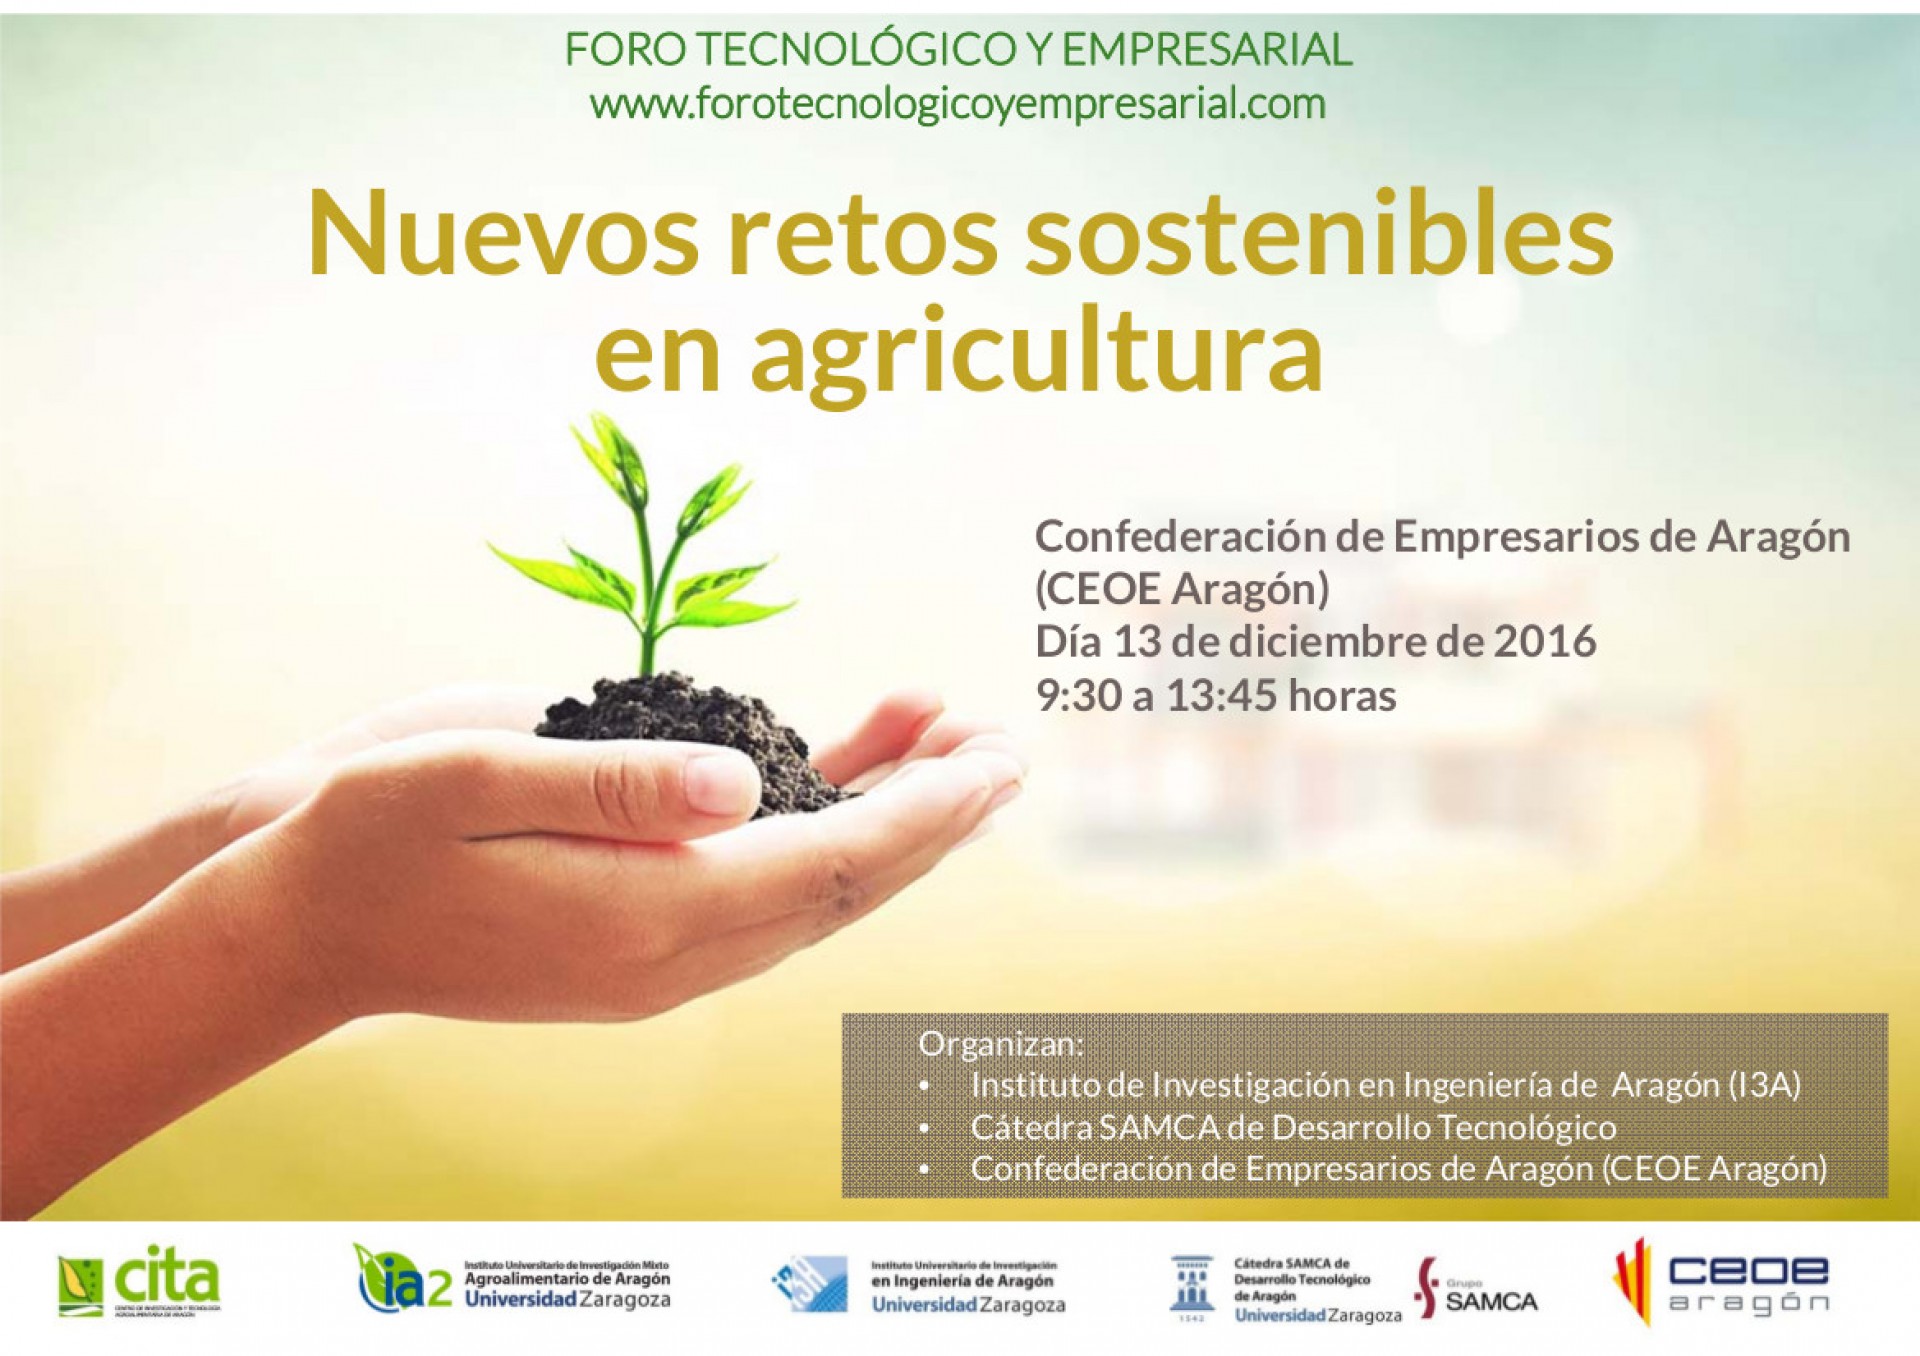 Nuevos retos tecnológicos para lograr una agricultura sostenible